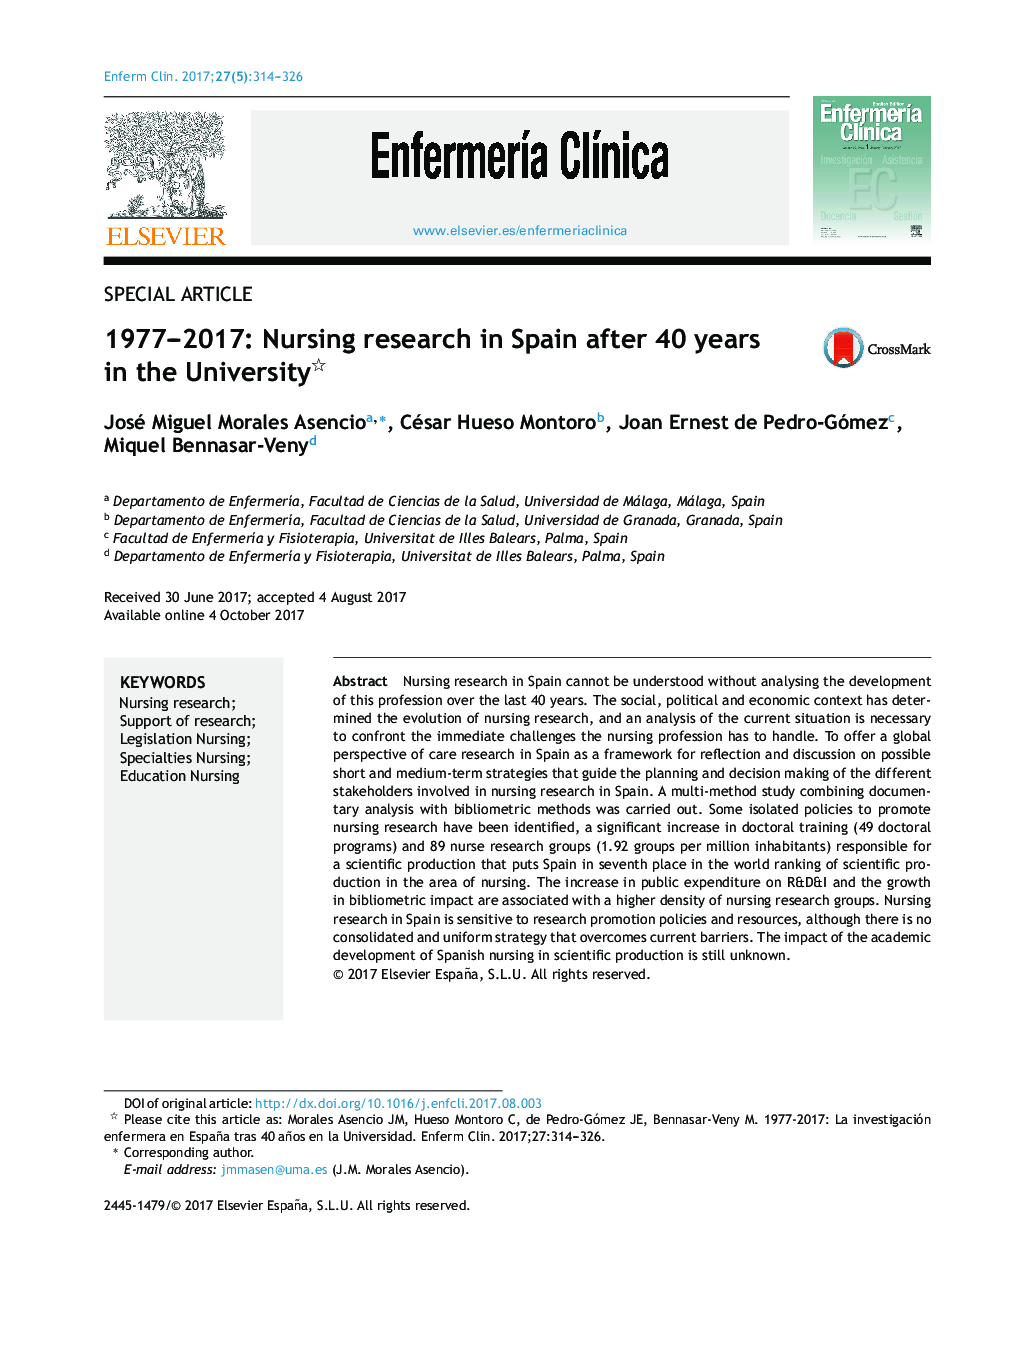 1977-2017: پژوهش پرستاری در اسپانیا پس از 40 سال در دانشگاه 